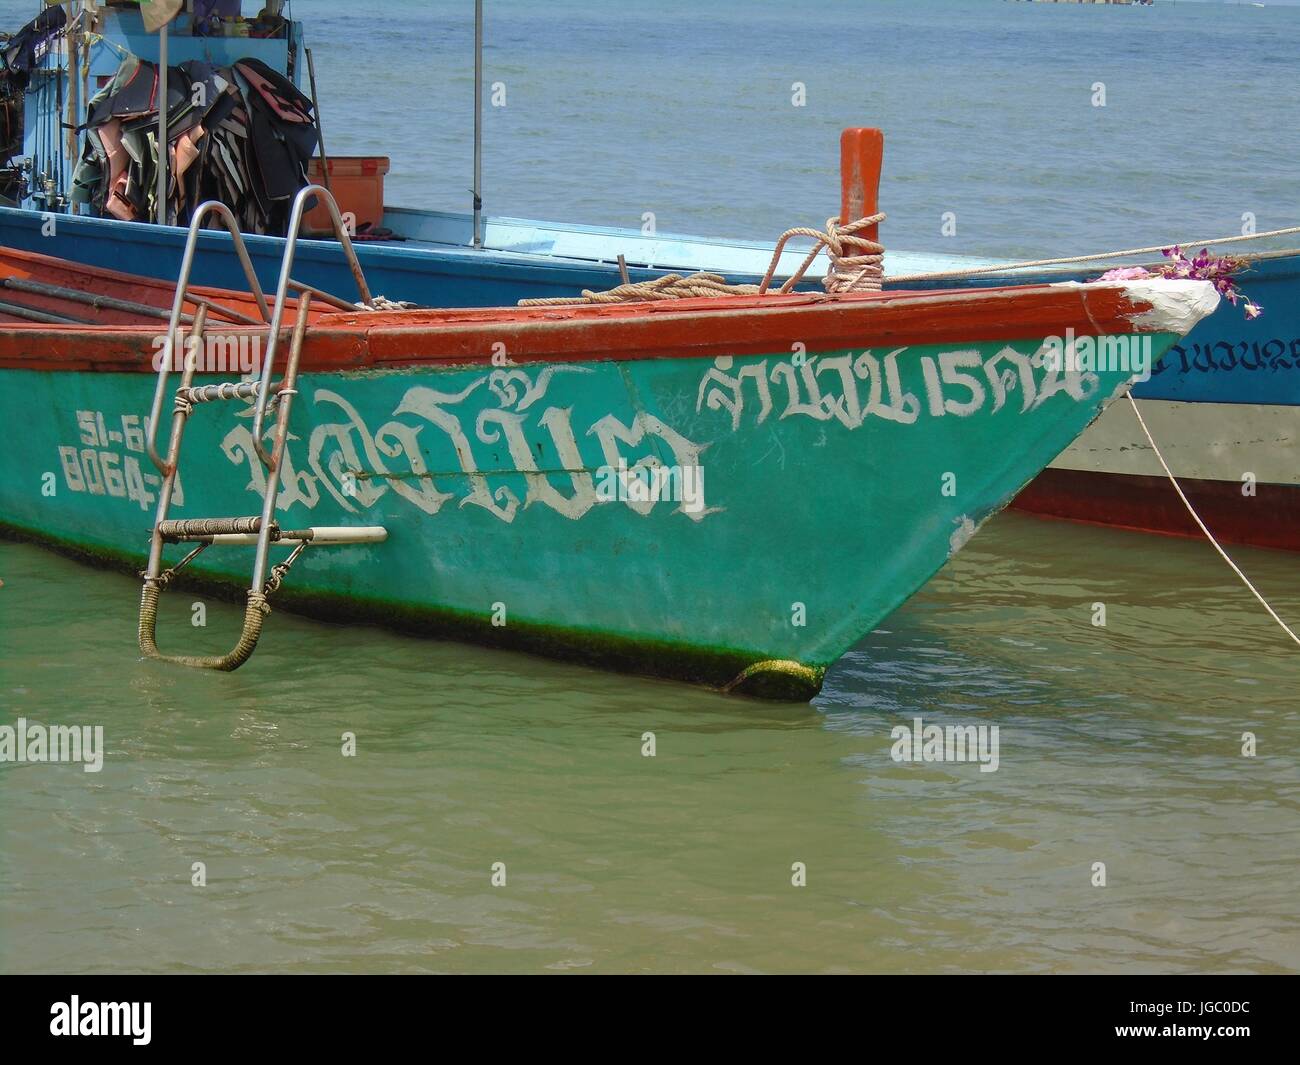 Deux bateaux de pêche ancrés sur le rivage dans le golfe de Thaïlande Pattaya Beach Thaïlande Banque D'Images